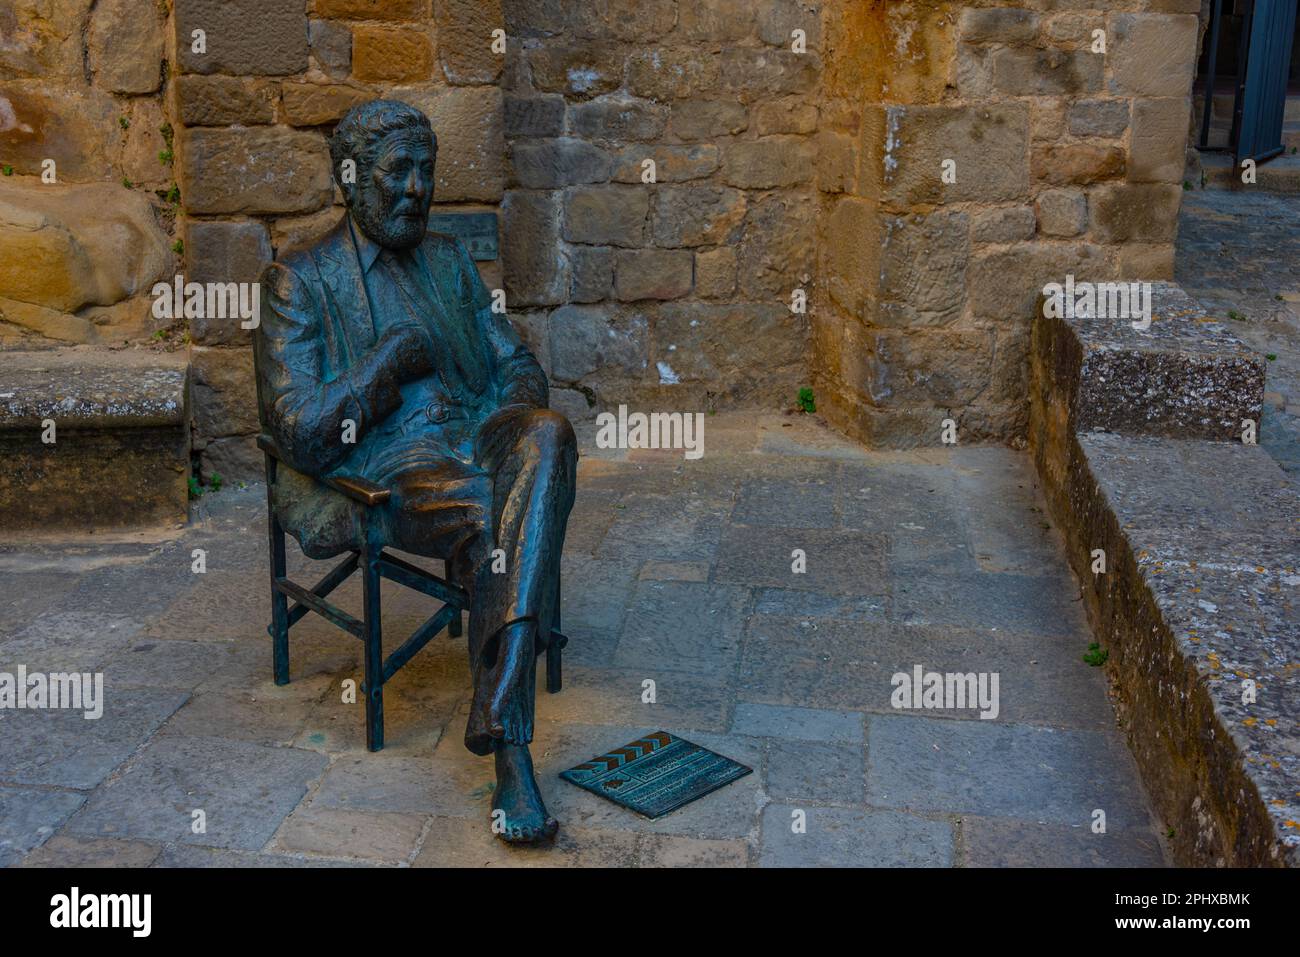 Statua di Luis Garcia Berlanga nel villaggio spagnolo di Sos del Rey Catolico. Foto Stock